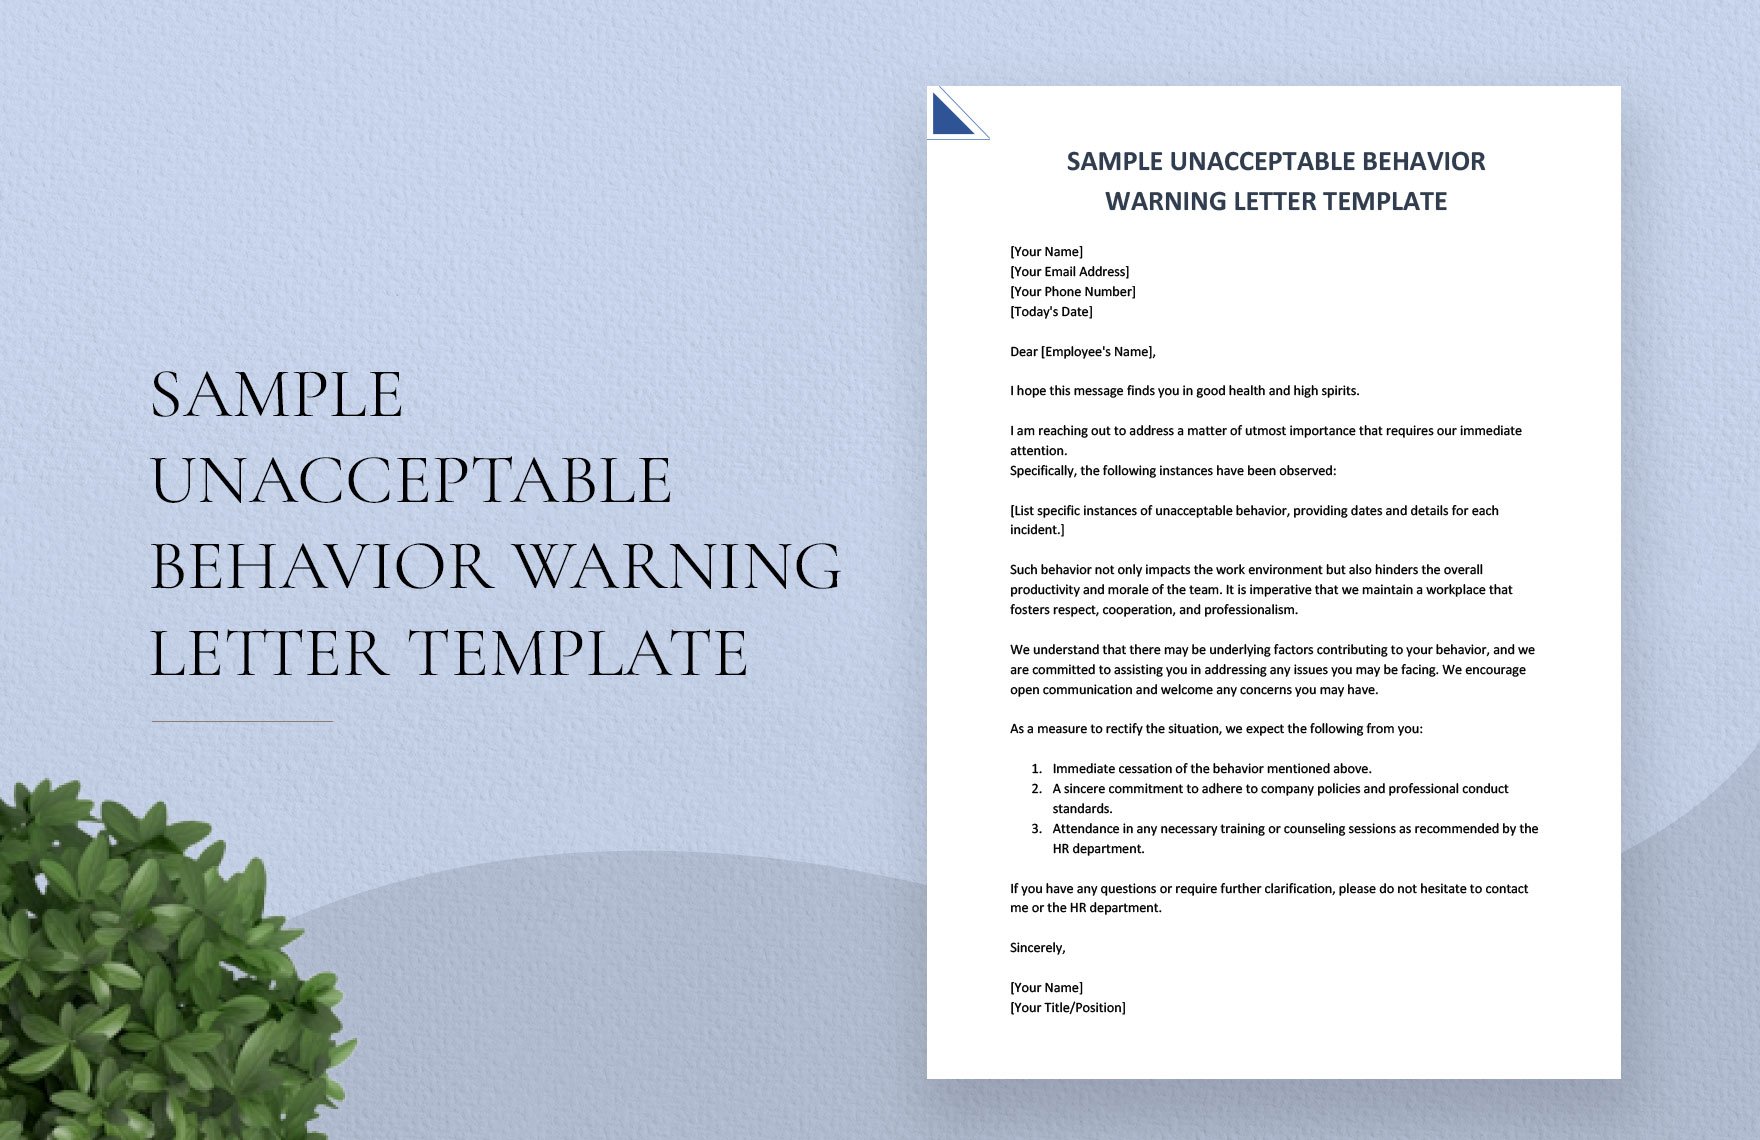 Sample Unacceptable Behavior Warning Letter Template